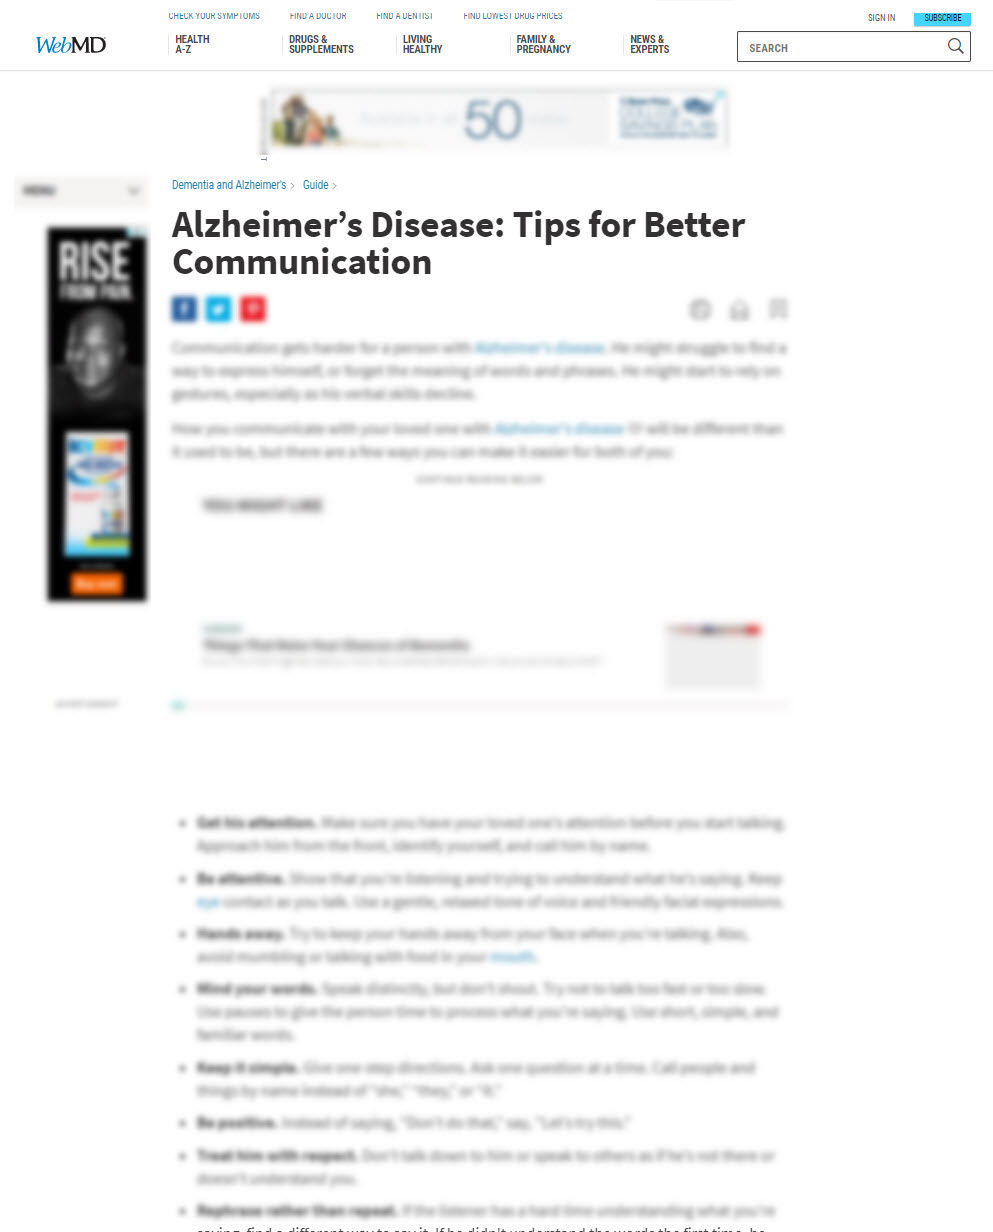 Alzheimer’s Disease: Tips for Better Communication